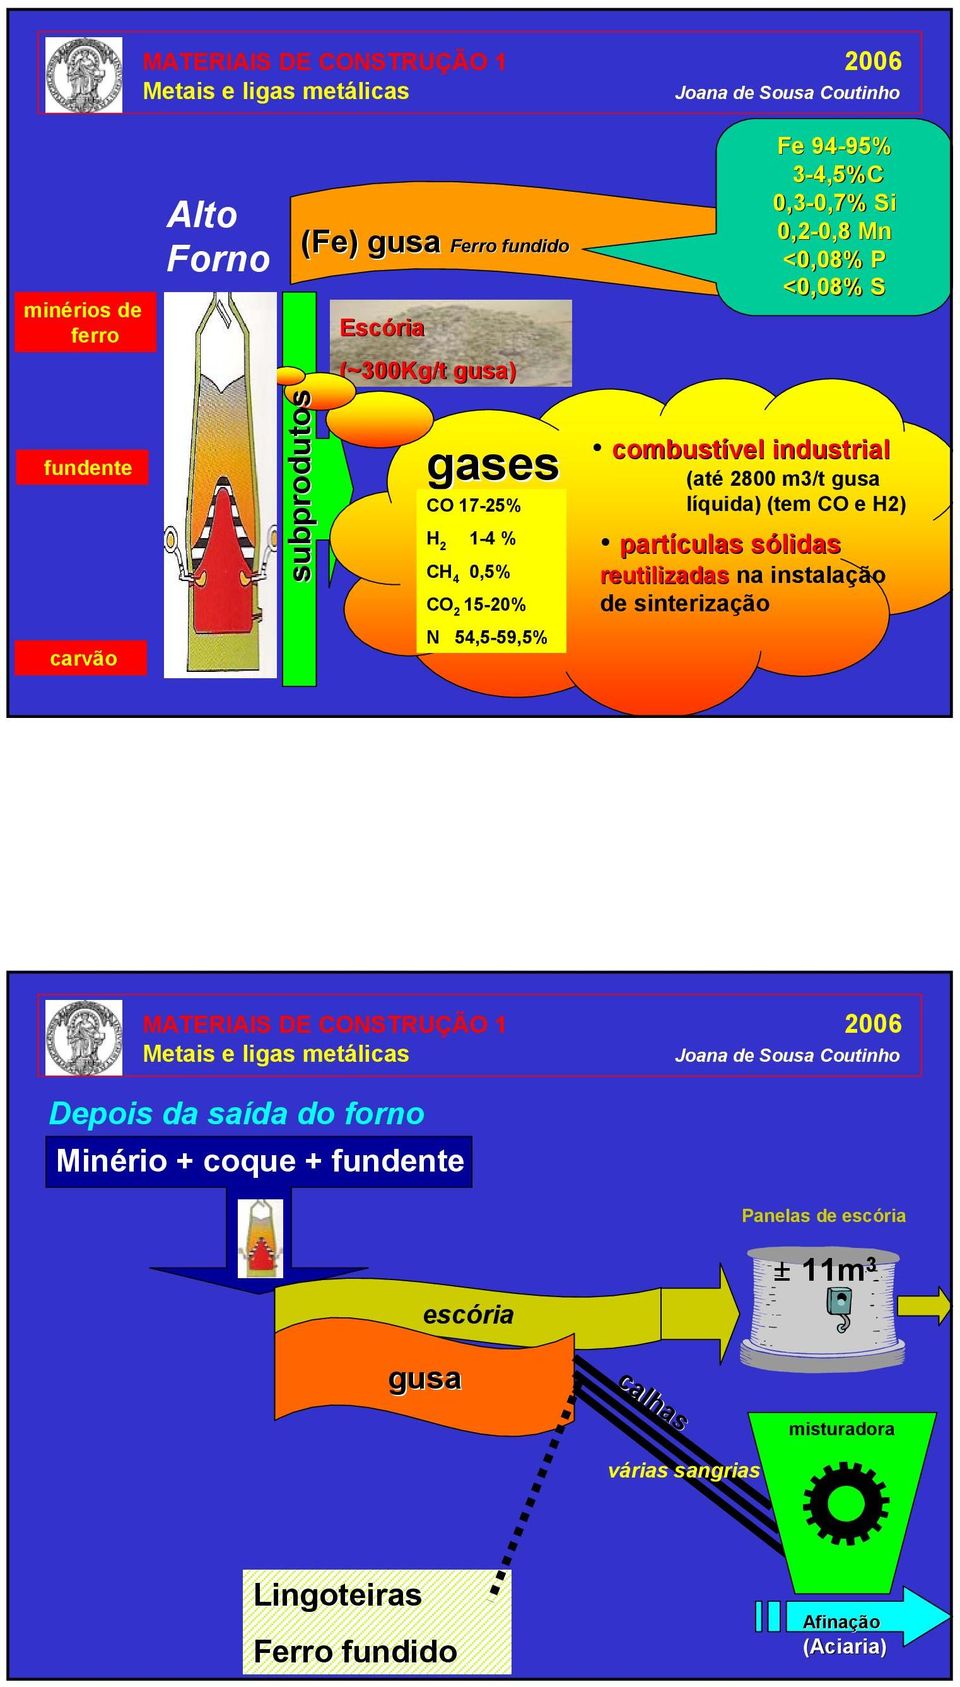 industrial (até 2800 m3/t gusa líquida) (tem CO e H2) partículas sólidass reutilizadas na instalação de sinterização Depois da saída